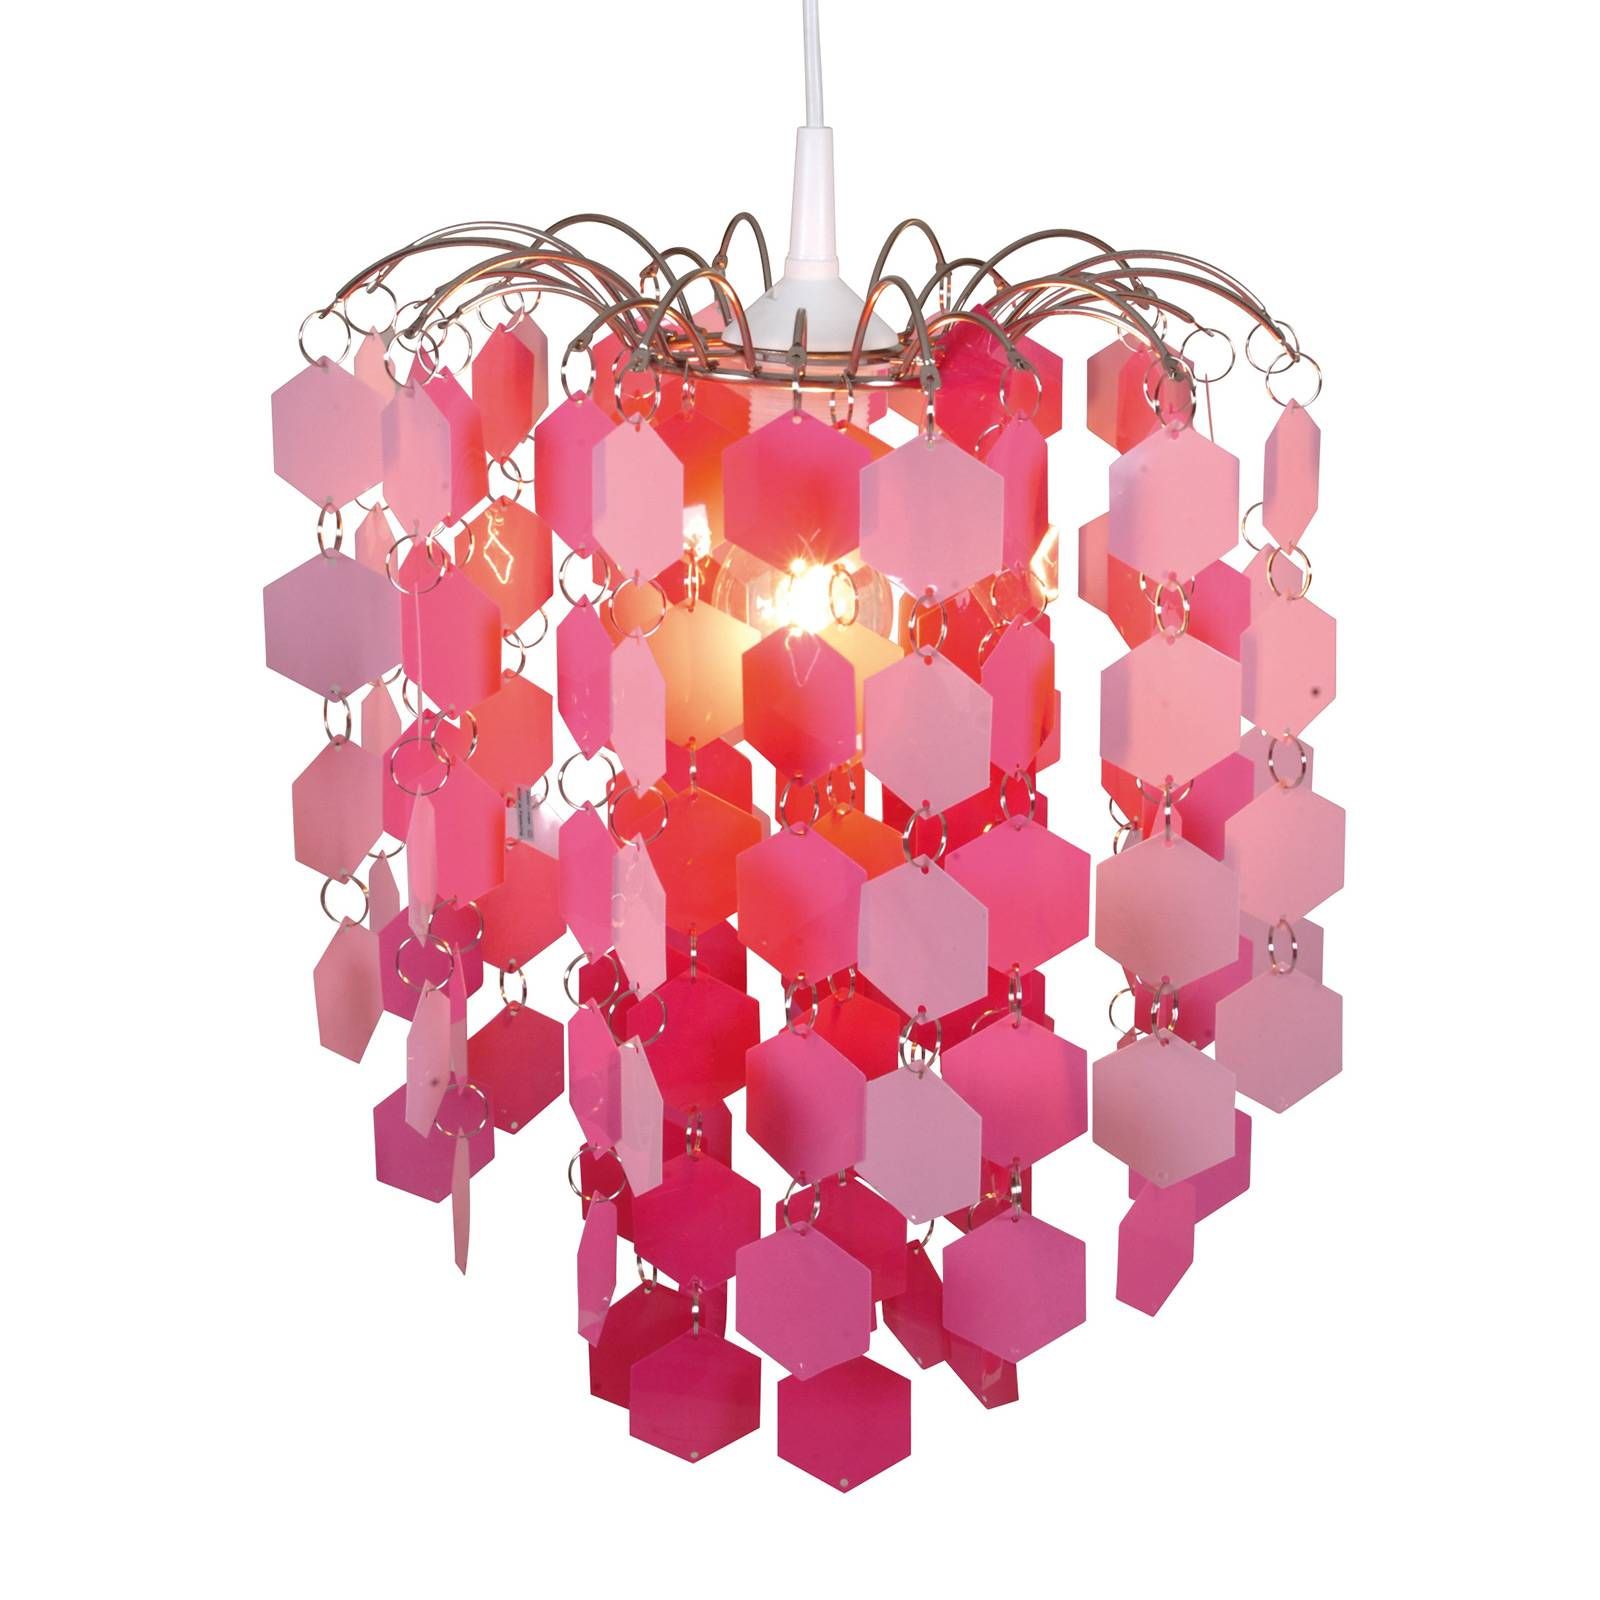 Näve Závesná lampa 6008519, ružové dekoračné prvky, Detská izba, kov, plast, E27, 60W, K: 40cm